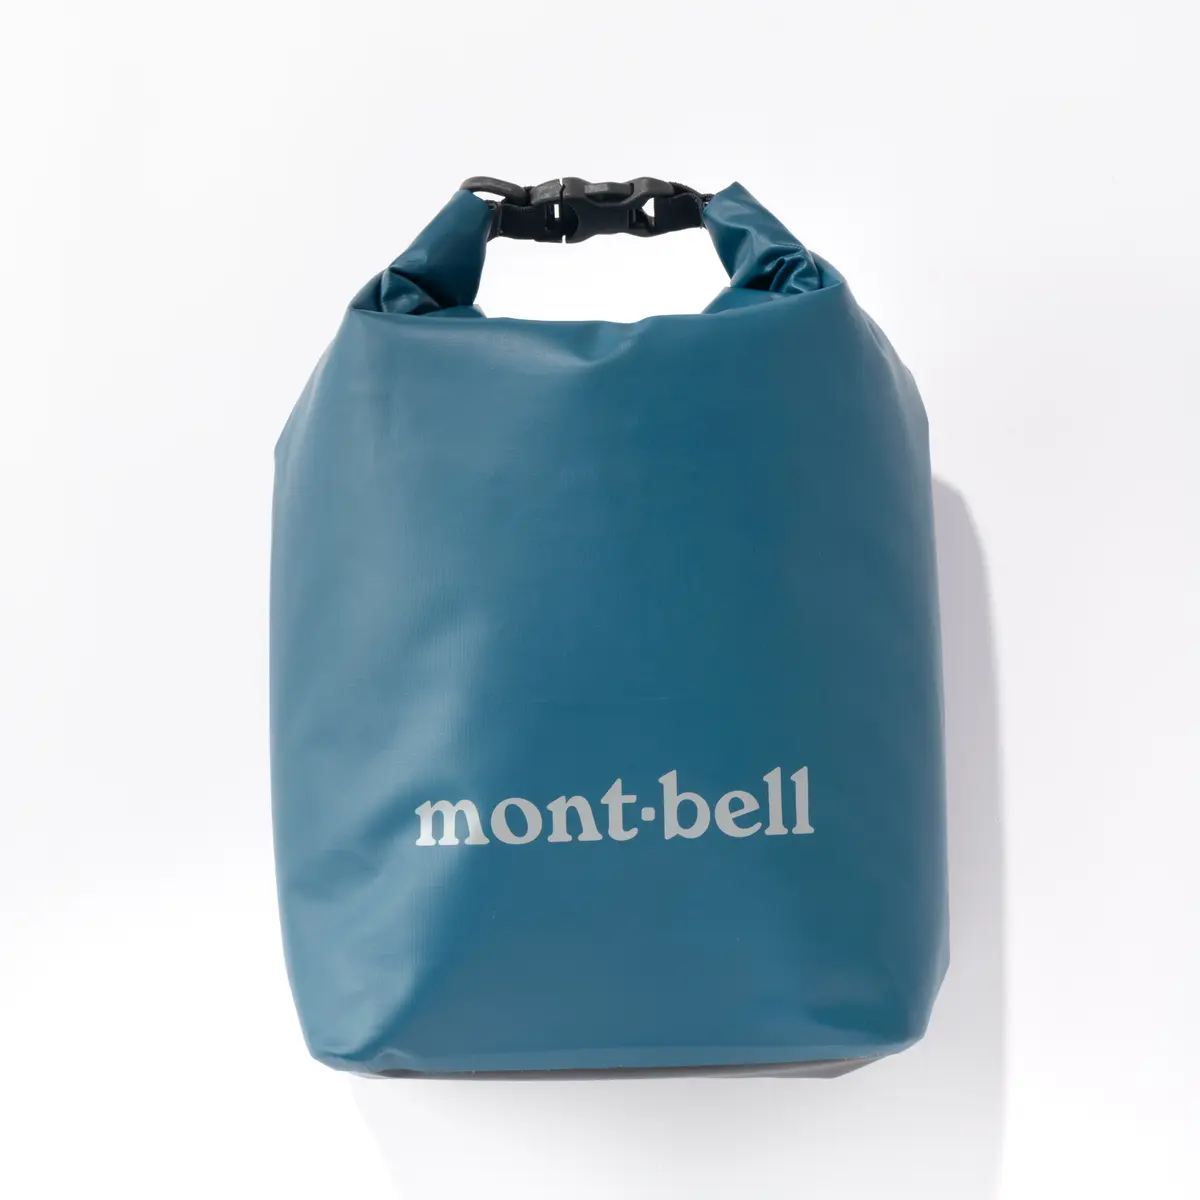 『モンベル』のクールバッグの撮りおろし画像